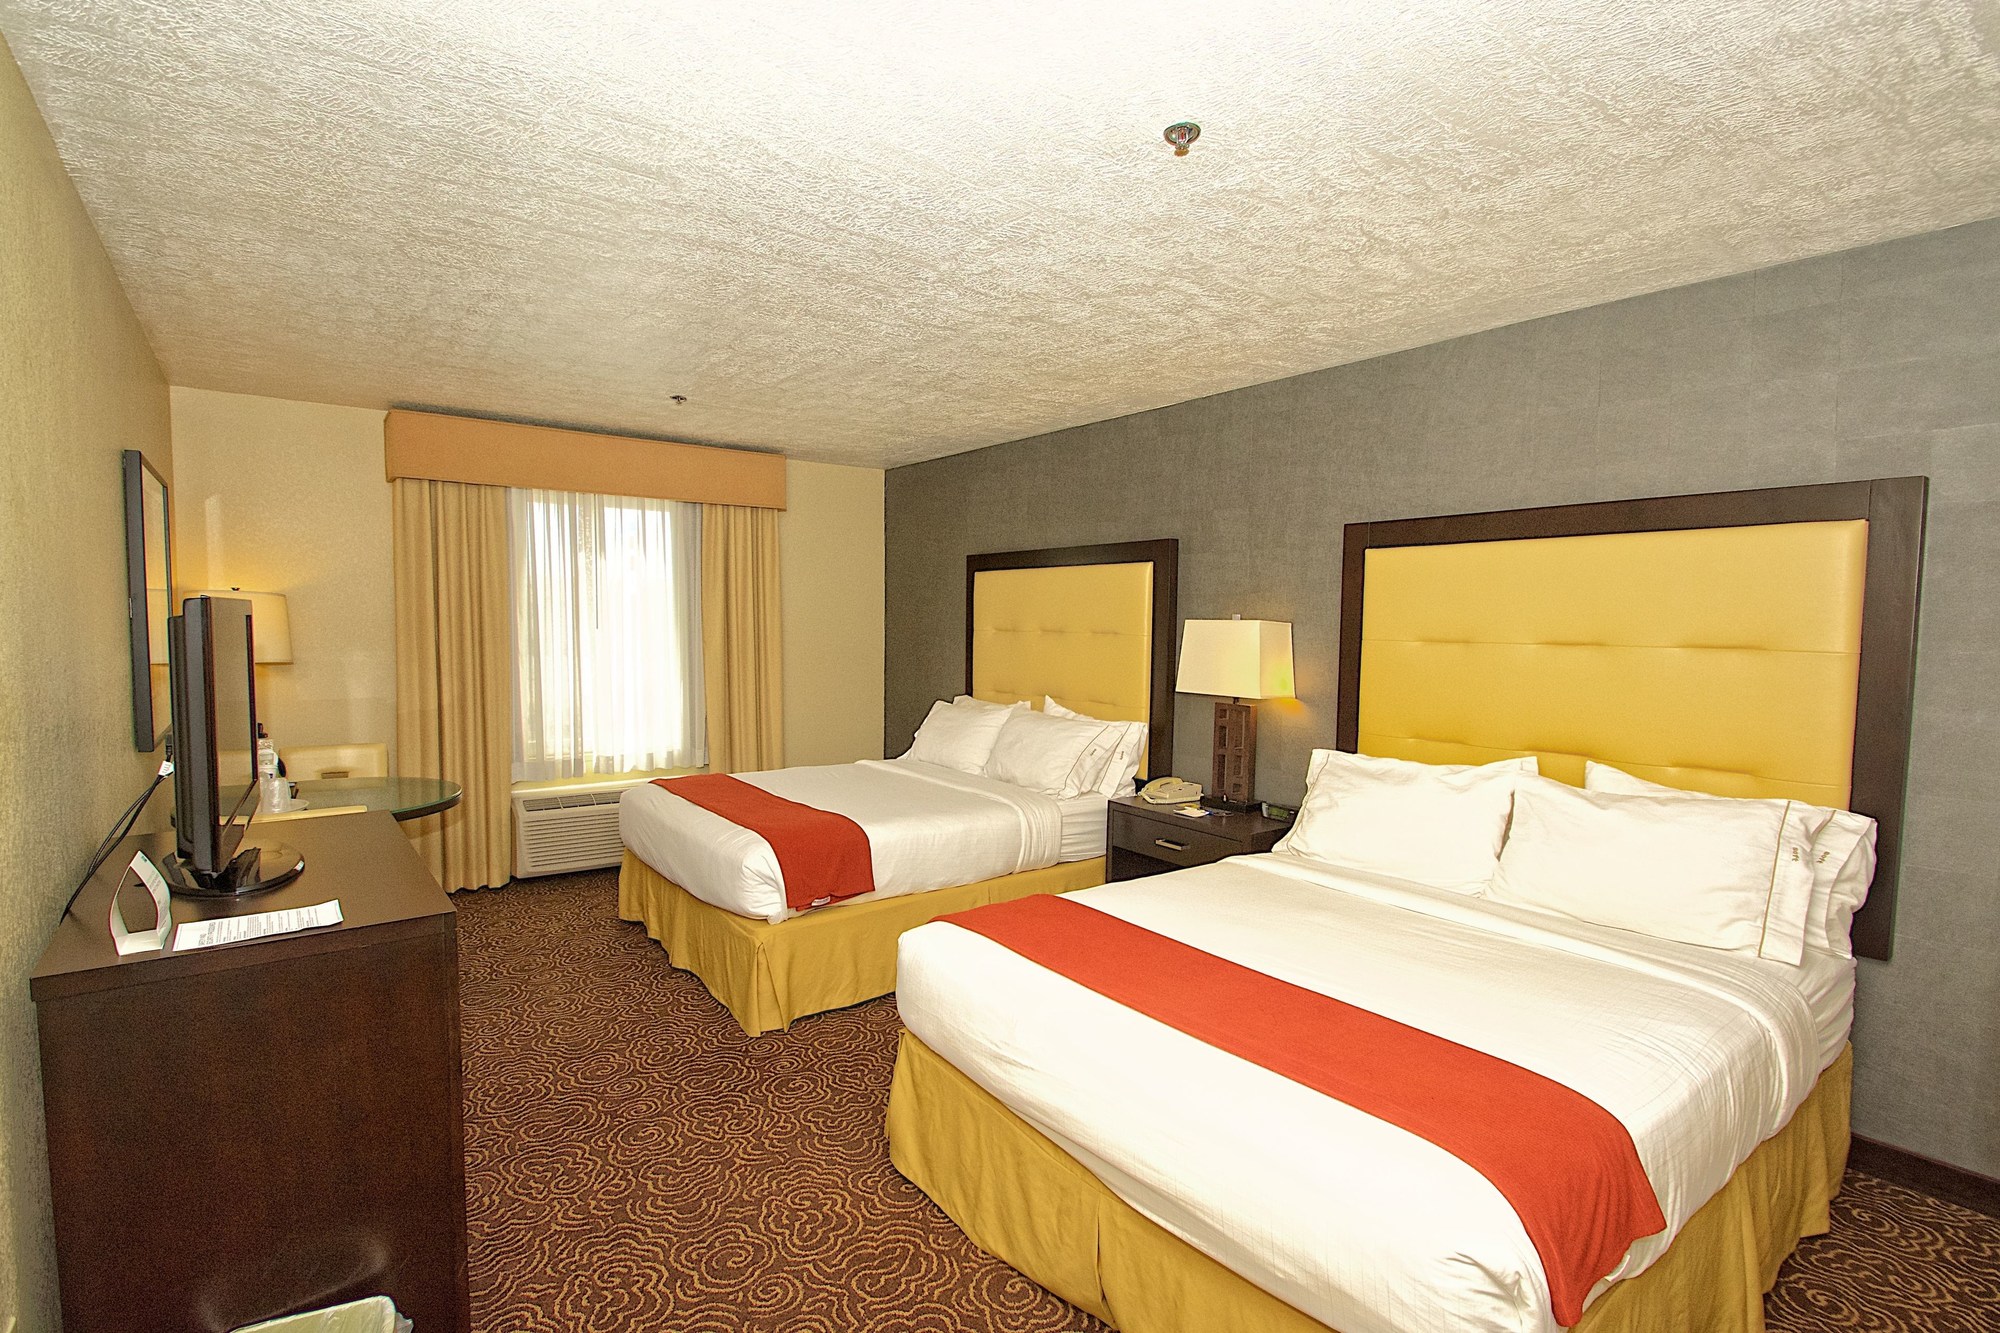 Holiday Inn Express Hotel & Suites Ogden